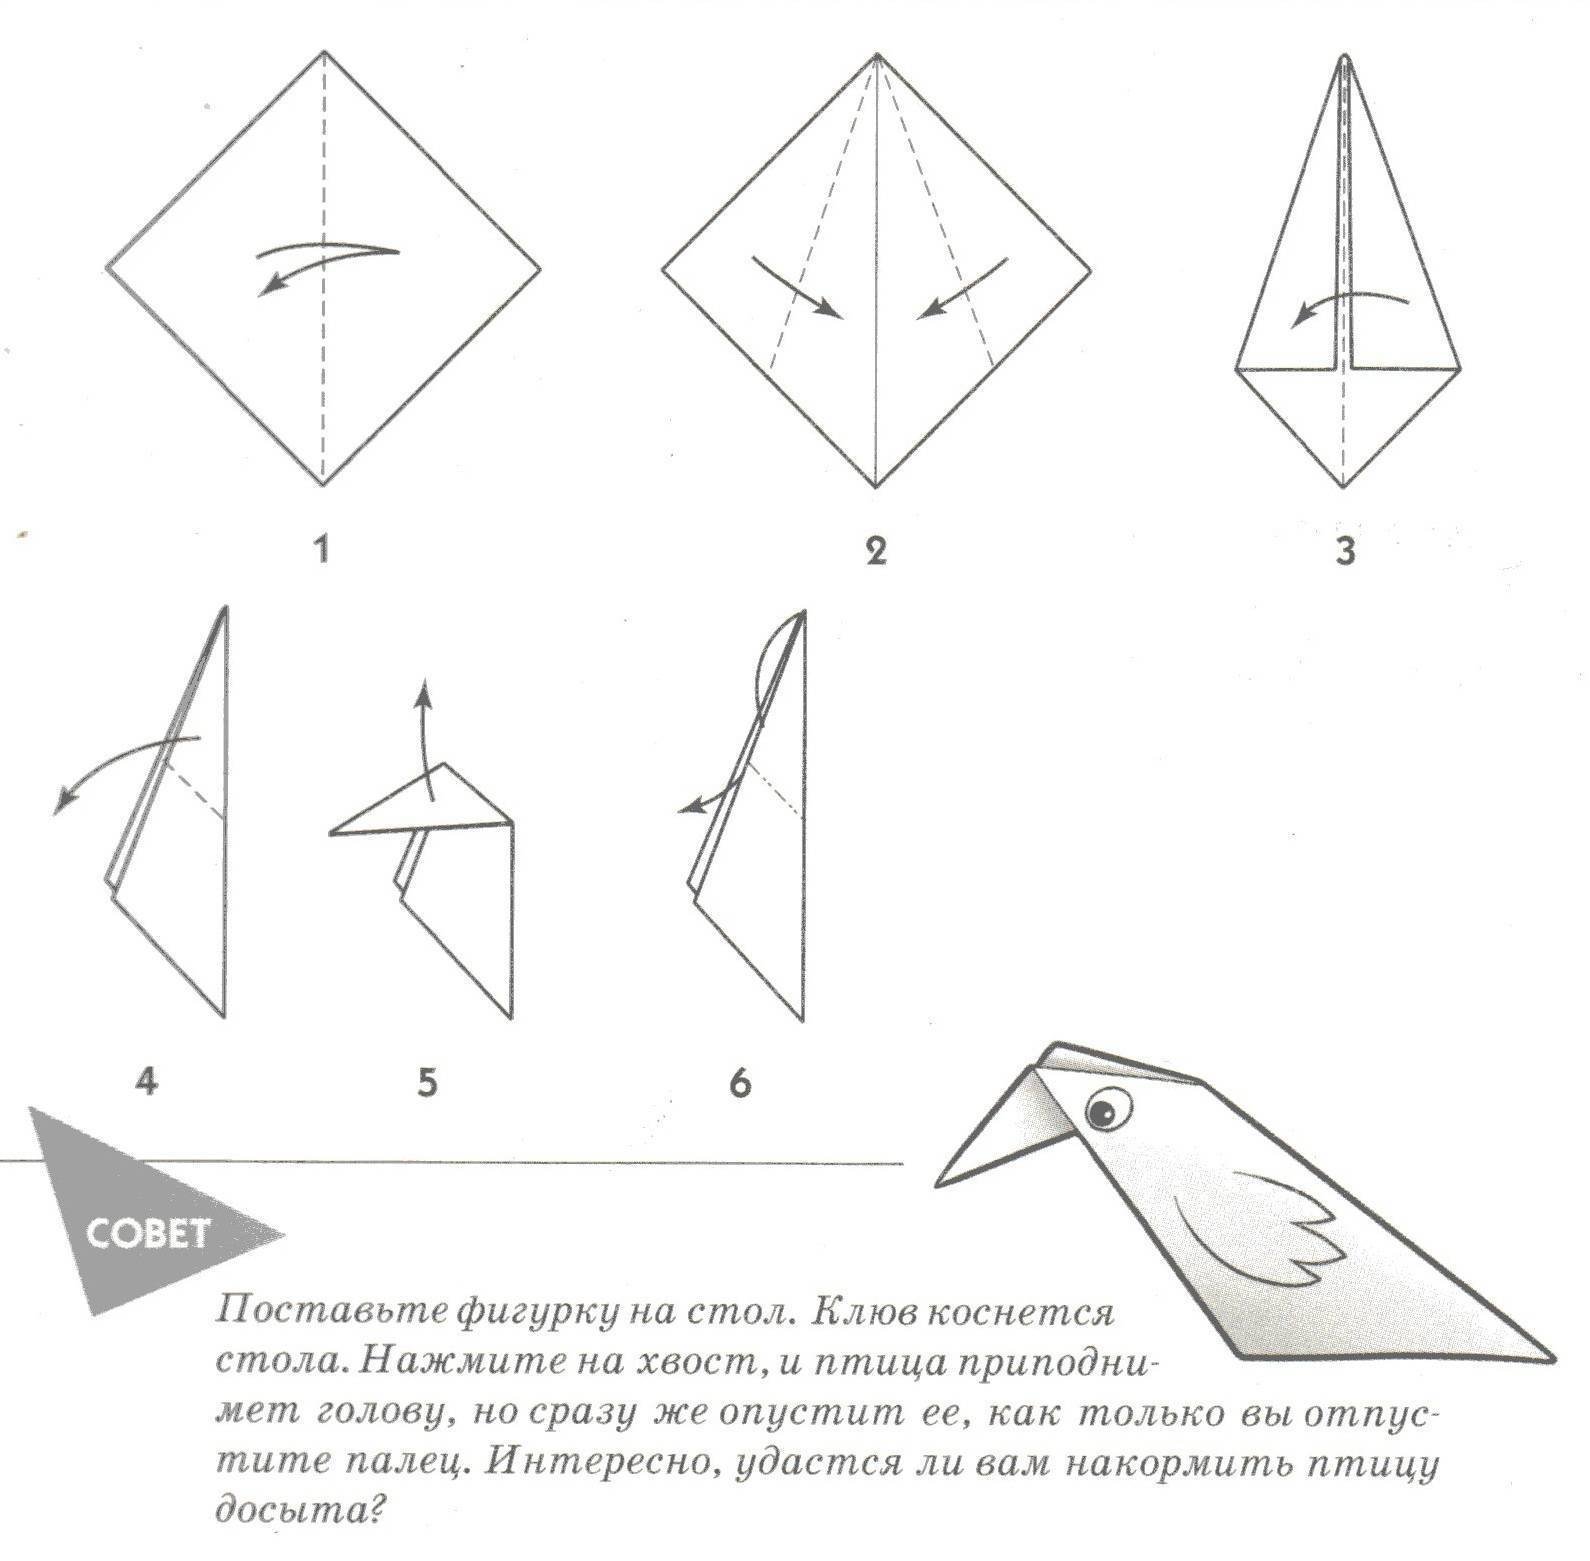 Легкая птичка из бумаги. Оригами птичка из бумаги для детей простая. Птица оригами из бумаги простая схема для детей. Птица оригами простая схема для детей. Оригами птица из бумаги пошаговая инструкция для детей 5 лет.